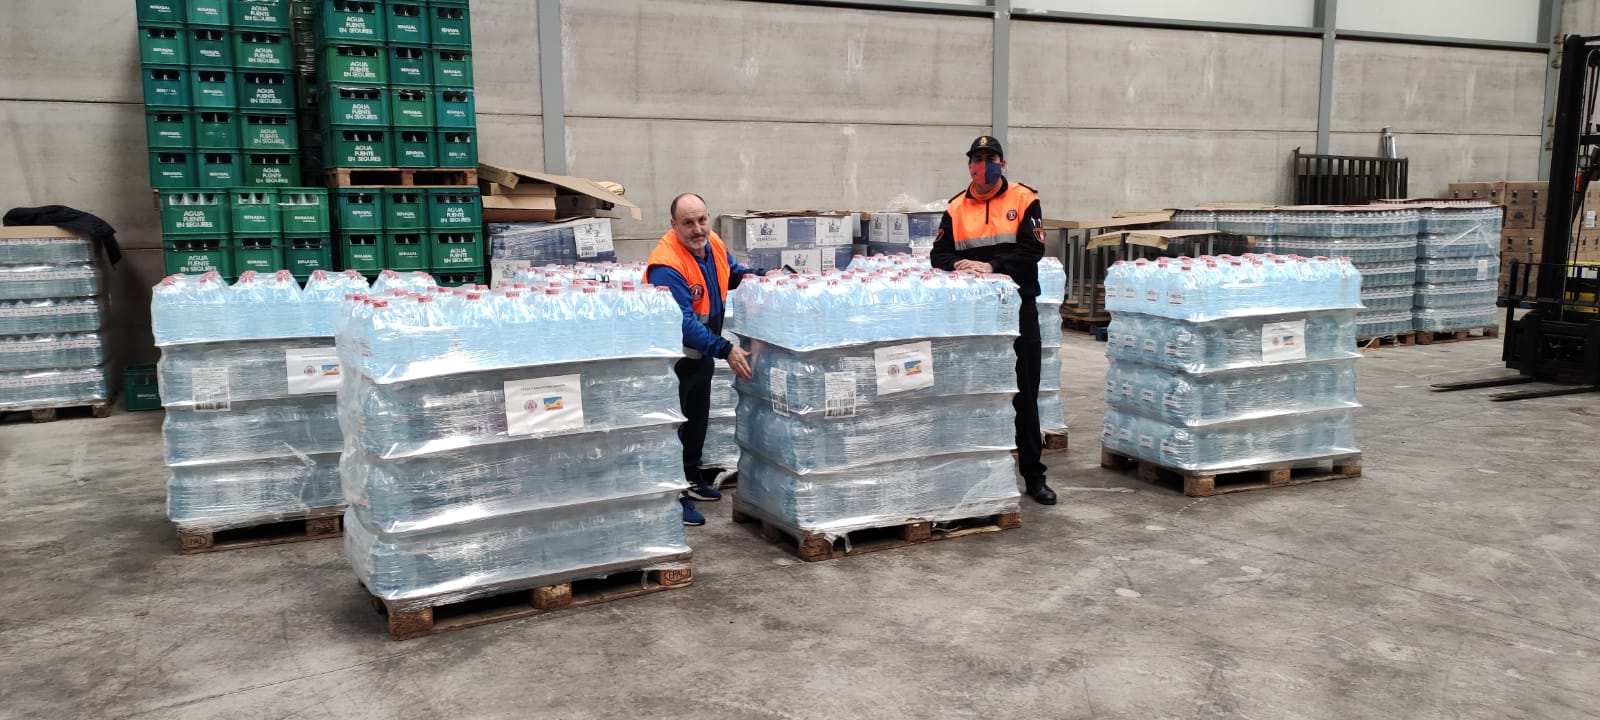 La Asociación de Protección Civil de Almenara dona cerca de 5000 litros de agua embotellada para los refugiados ucranianos